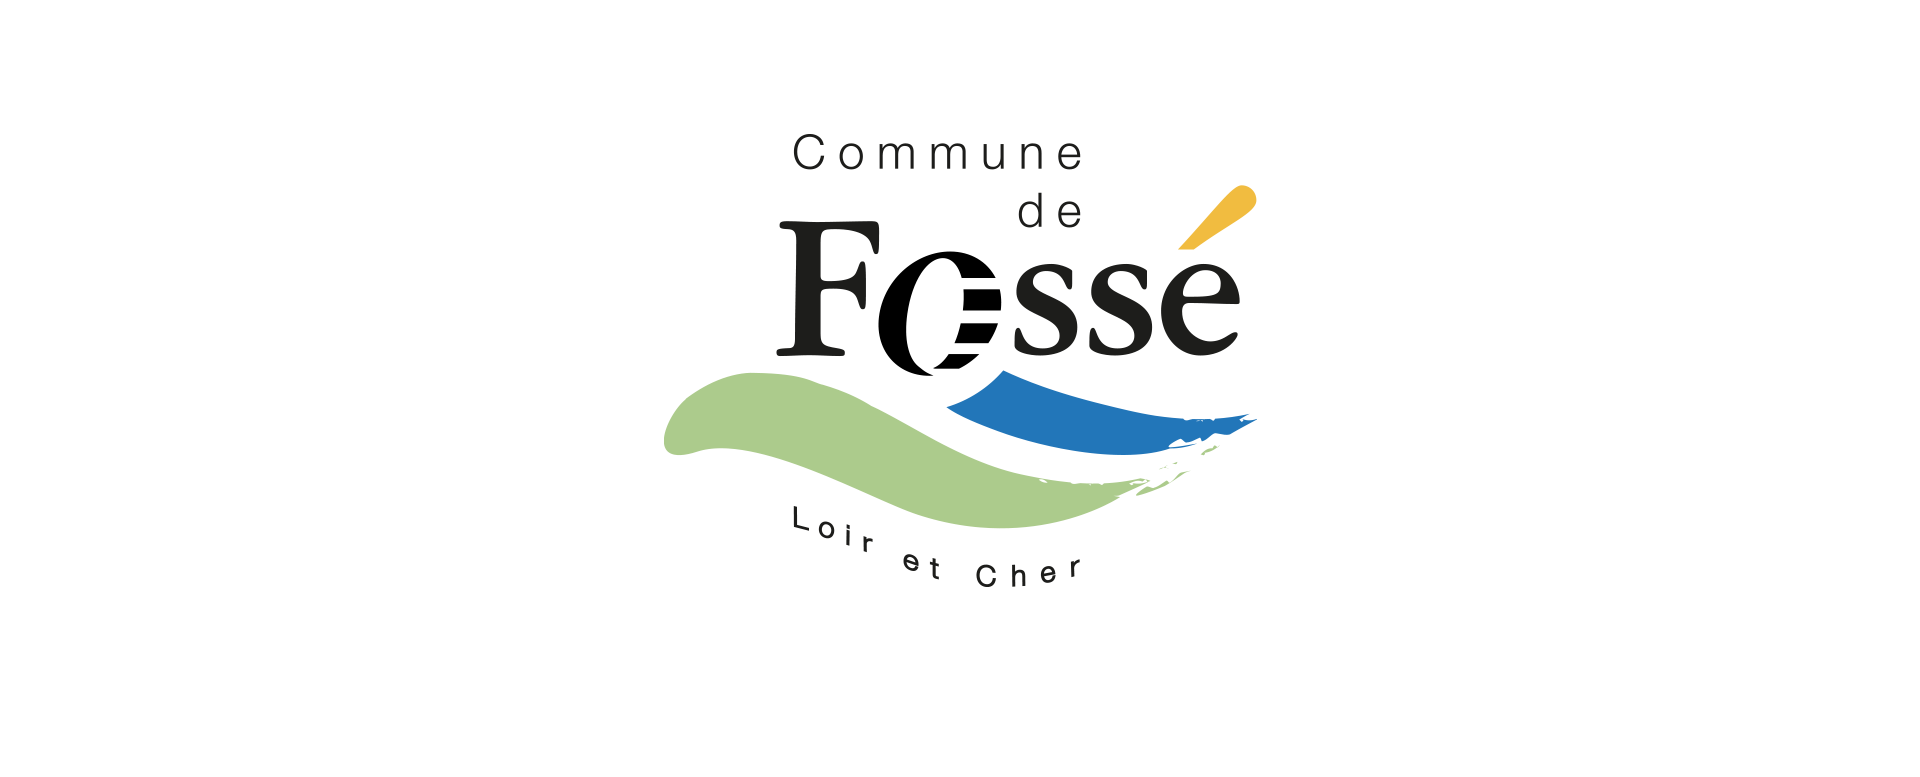 commune de Fossé Loir-et-Cher